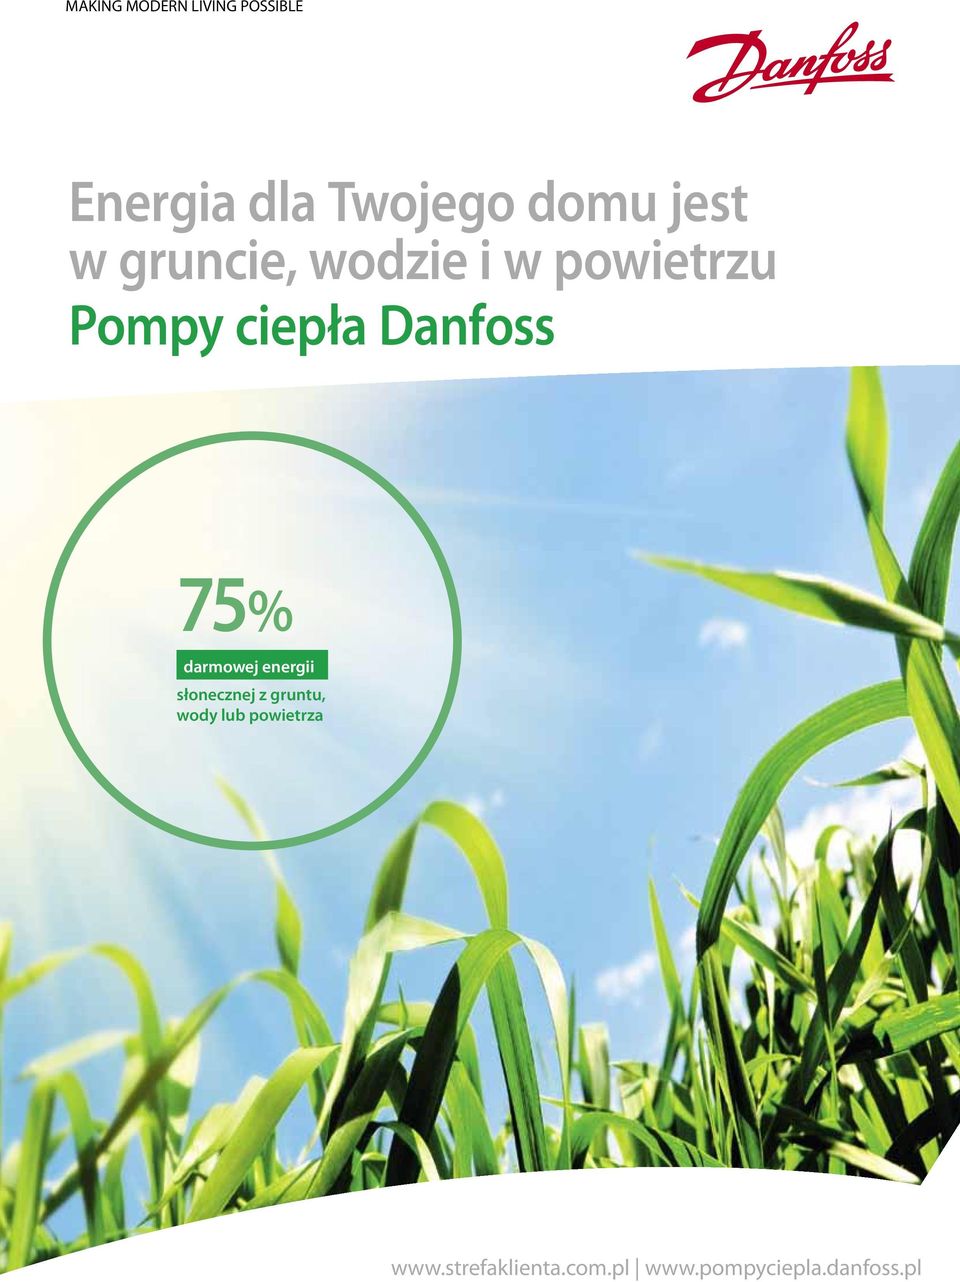 Danfoss 75% darmowej energii słonecznej z gruntu, wody